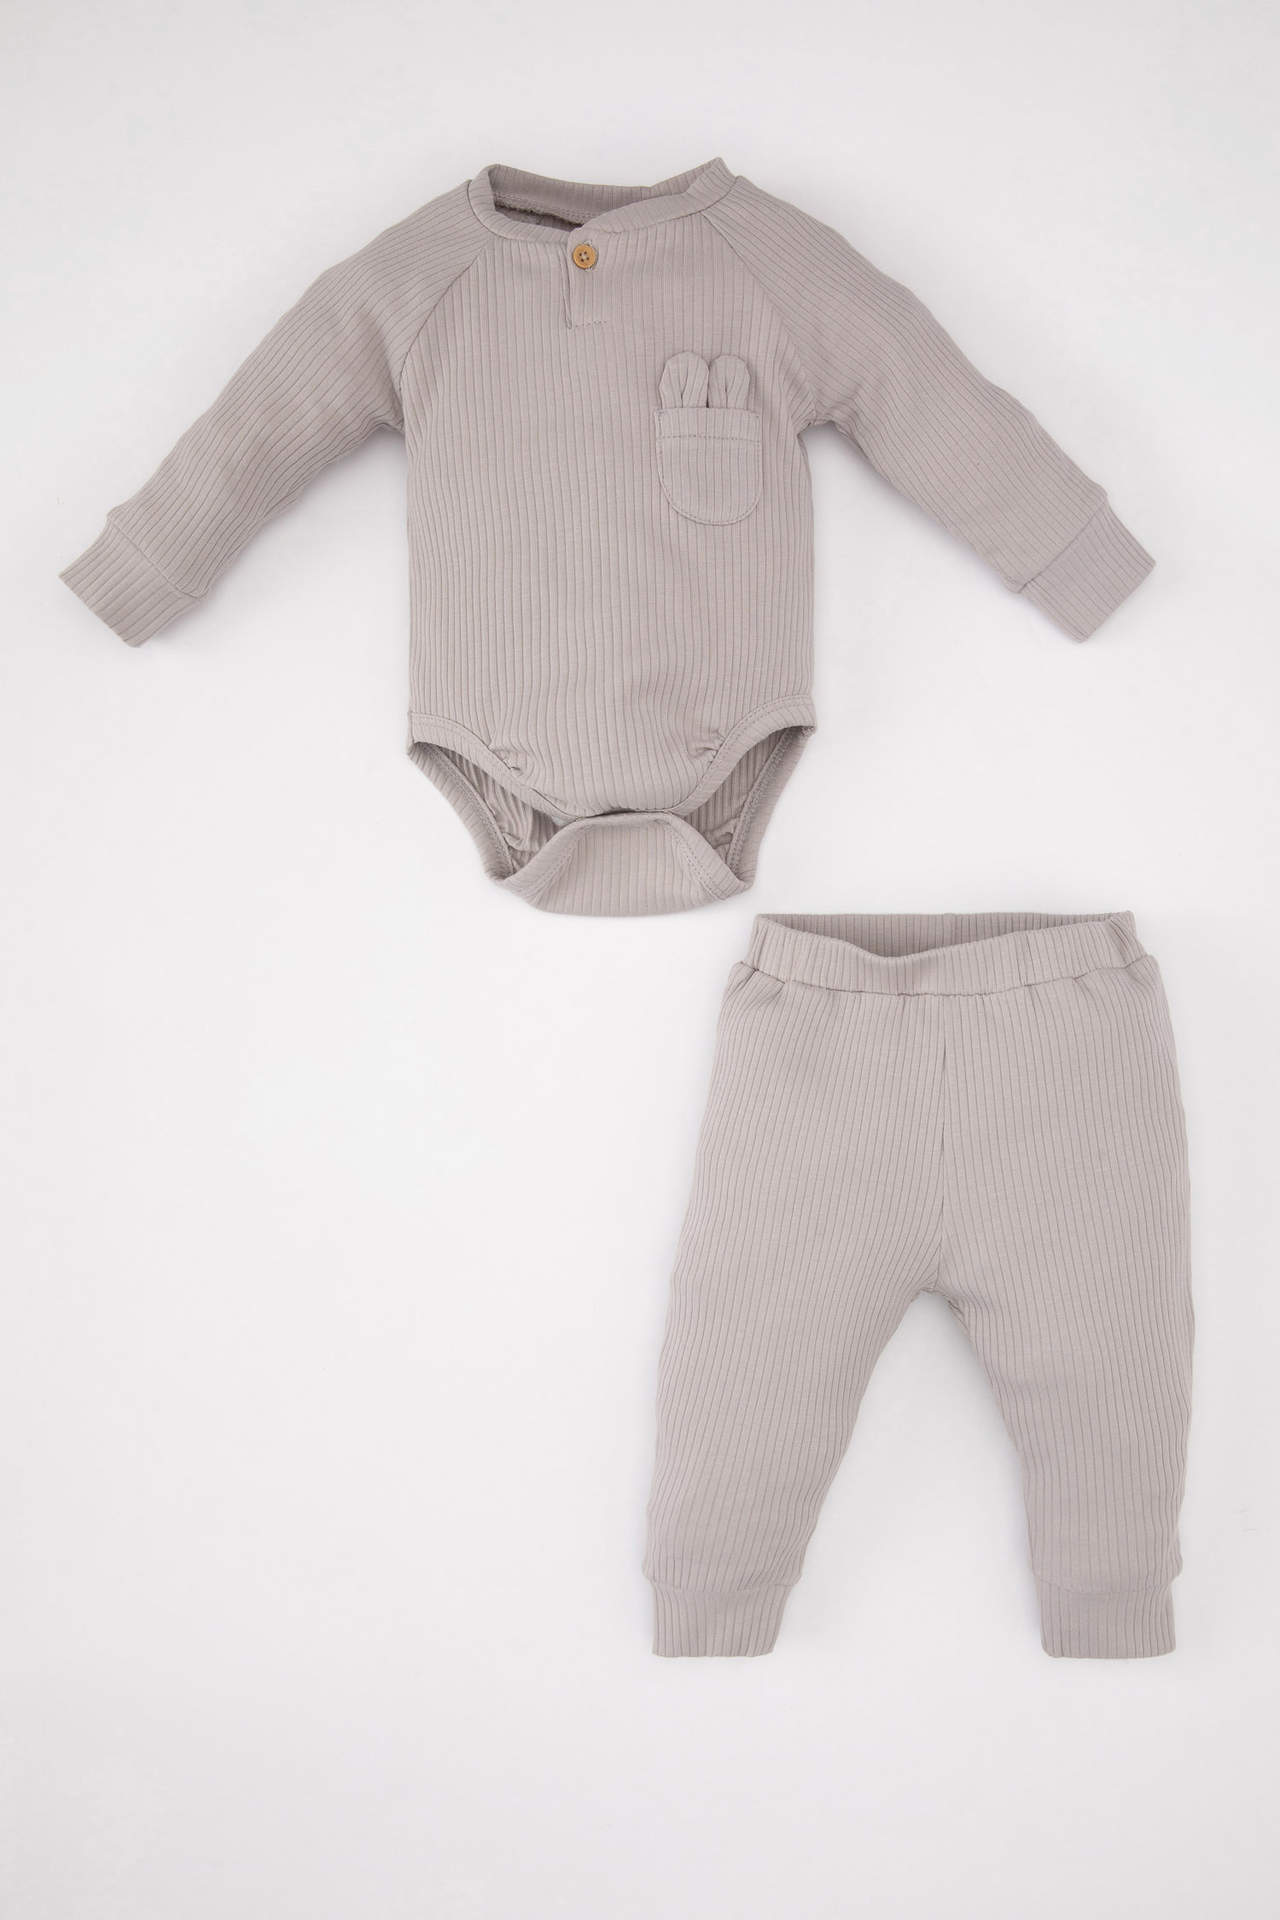 Levně DEFACTO Baby Boy Ribbed Camisole Snap Body Bottom 2 Piece Set